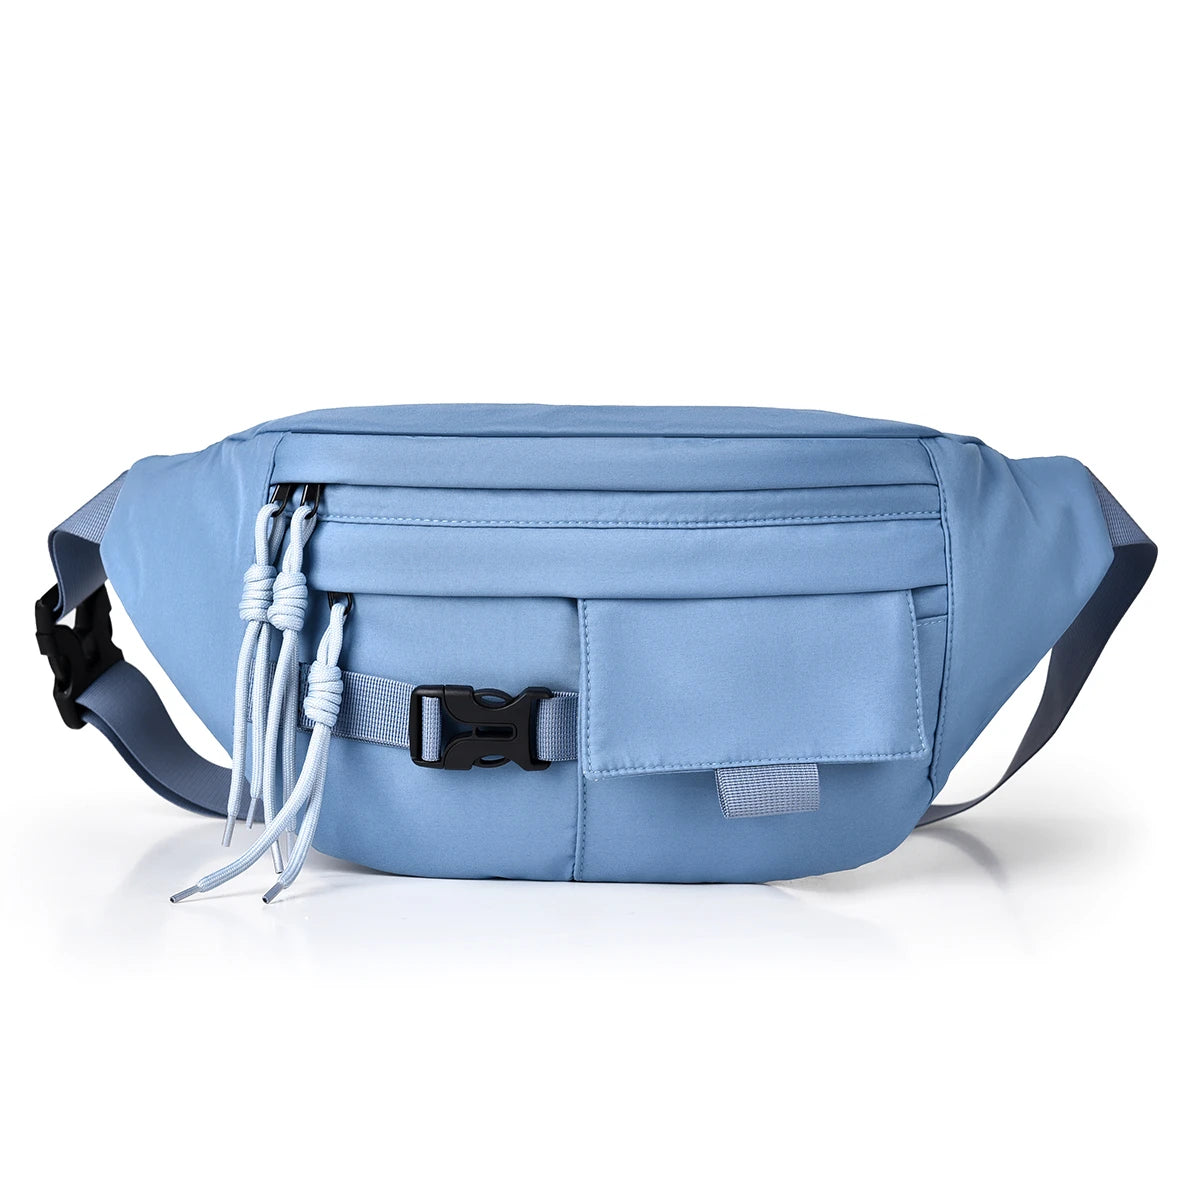 crossbody bag shoulder bag travel bag every day handbag